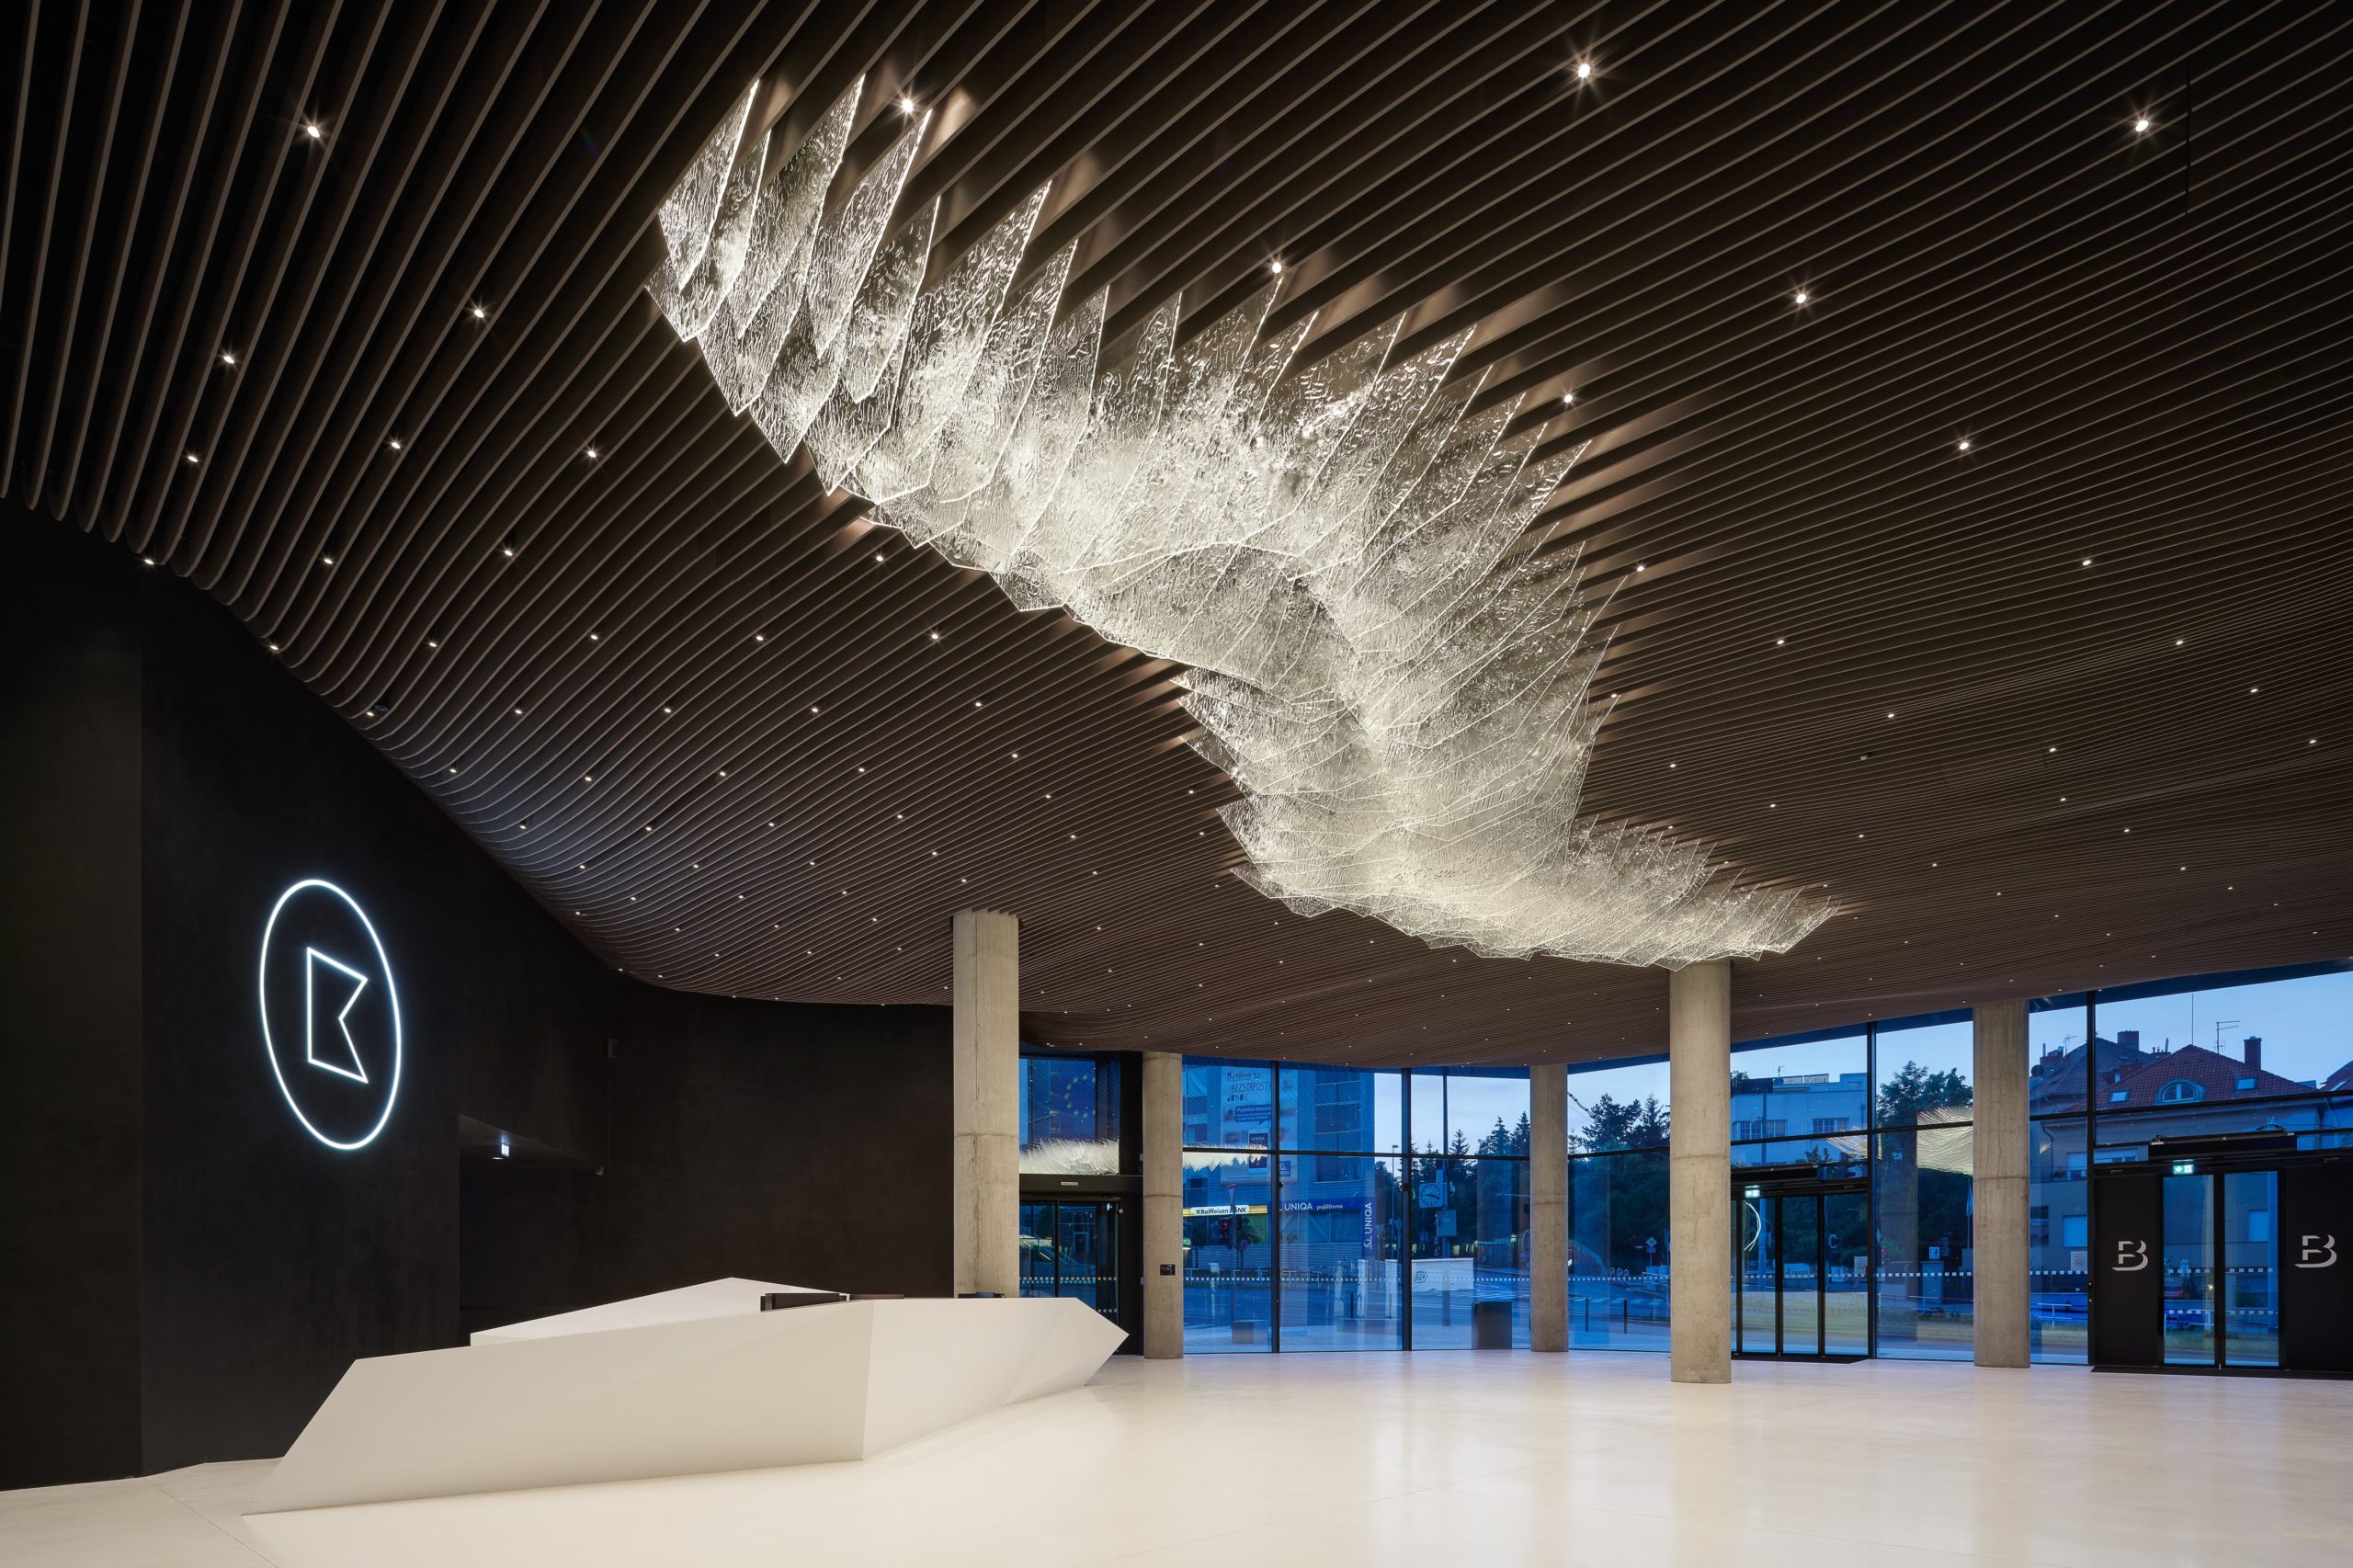 Skleněná instalace The Iceberg se nachází ve vstupní hale Centra Bořislavka. Tvoří ji 110 křišťálových panelů umístěných na dřevěném povrchu, který symbolizuje moře. Panely z plochého slinutého skla se postupně rozsvěcují, aby vytvářely dojem živého organismu.